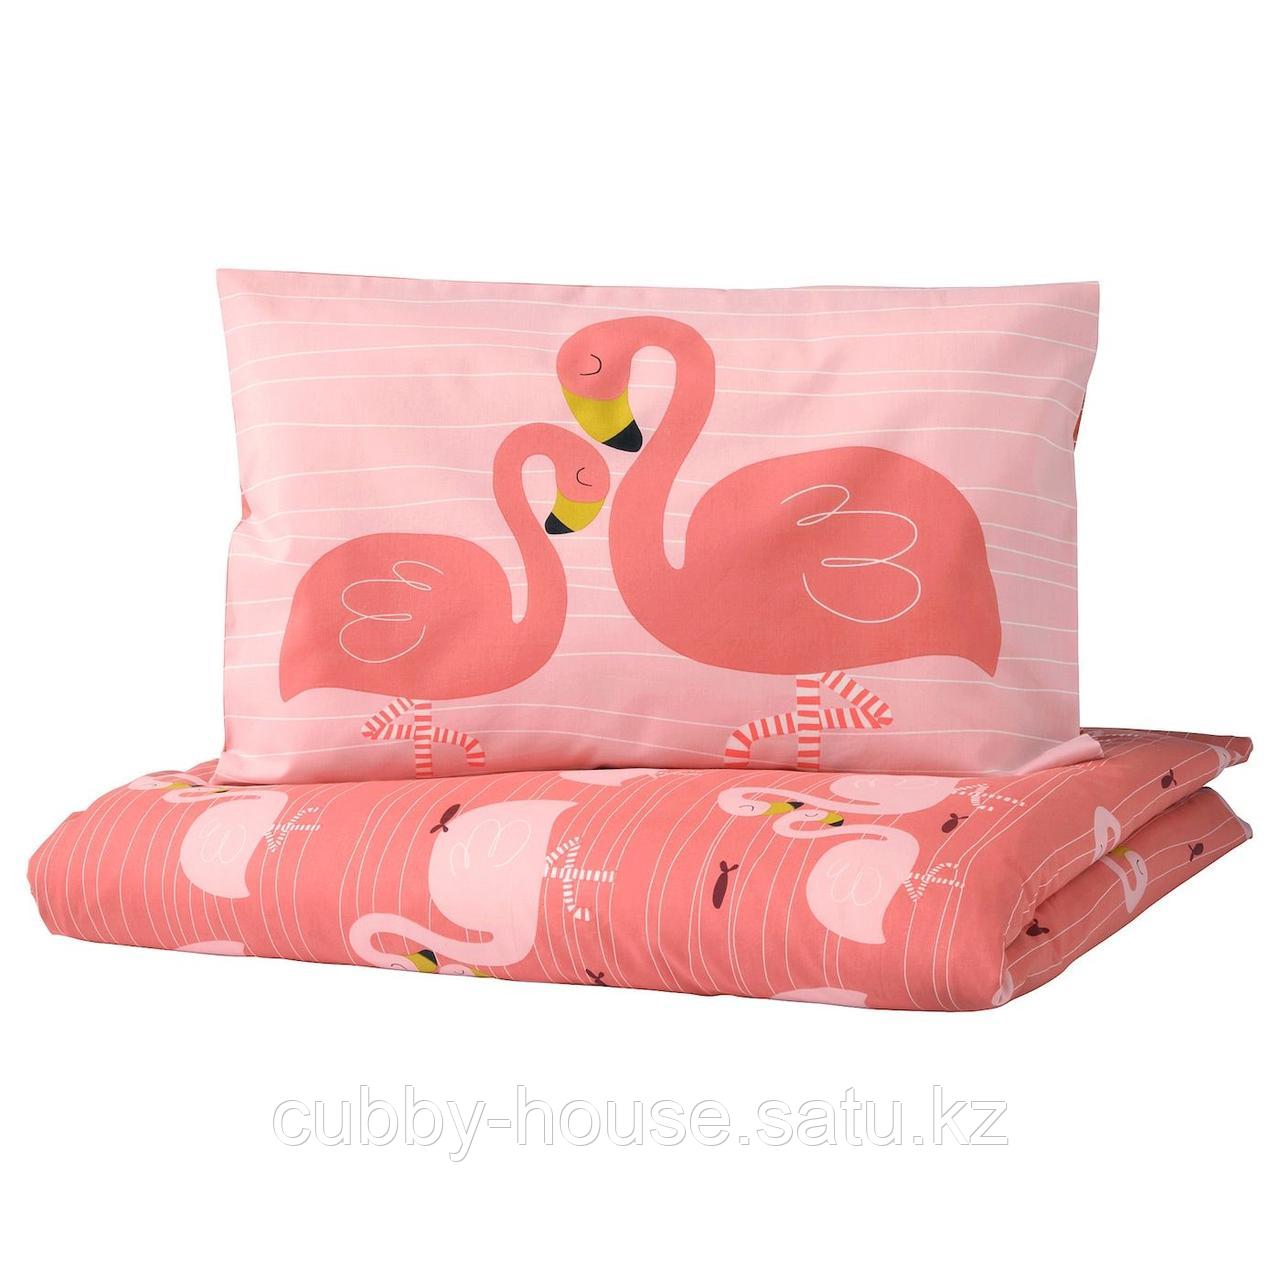 РЁРАНДЕ Пододеяльник, наволочка д/кроватки, фламинго, розовый, 110x125/35x55 см